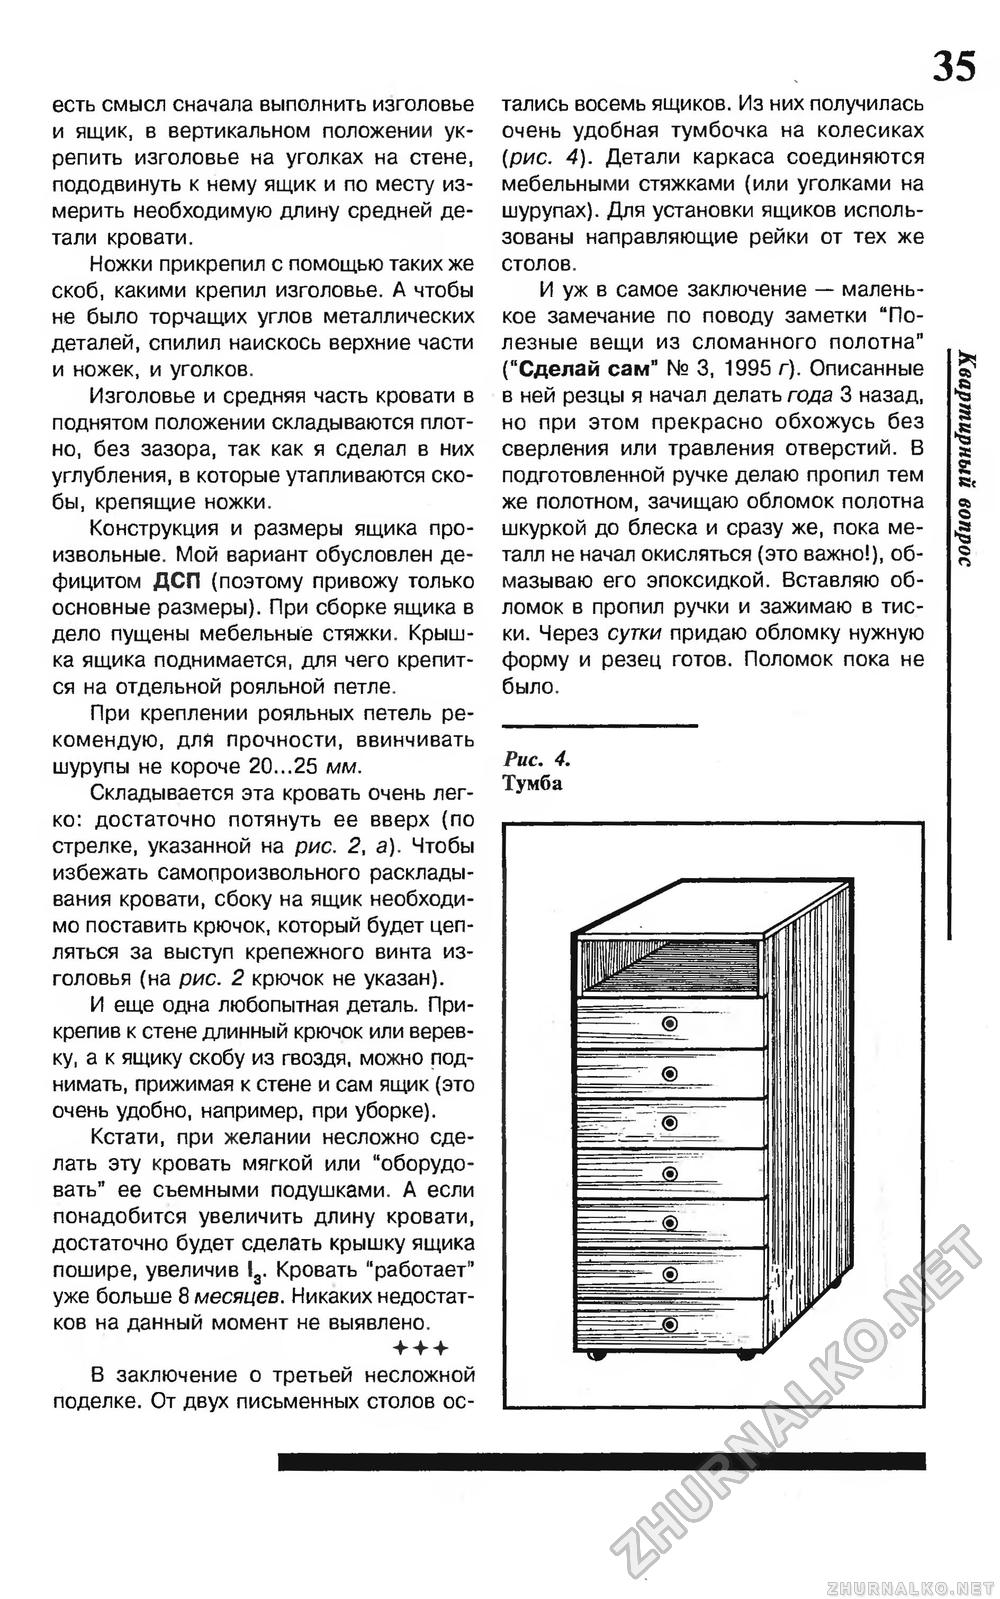 Сделай Сам (Огонек) 1996-06, страница 37